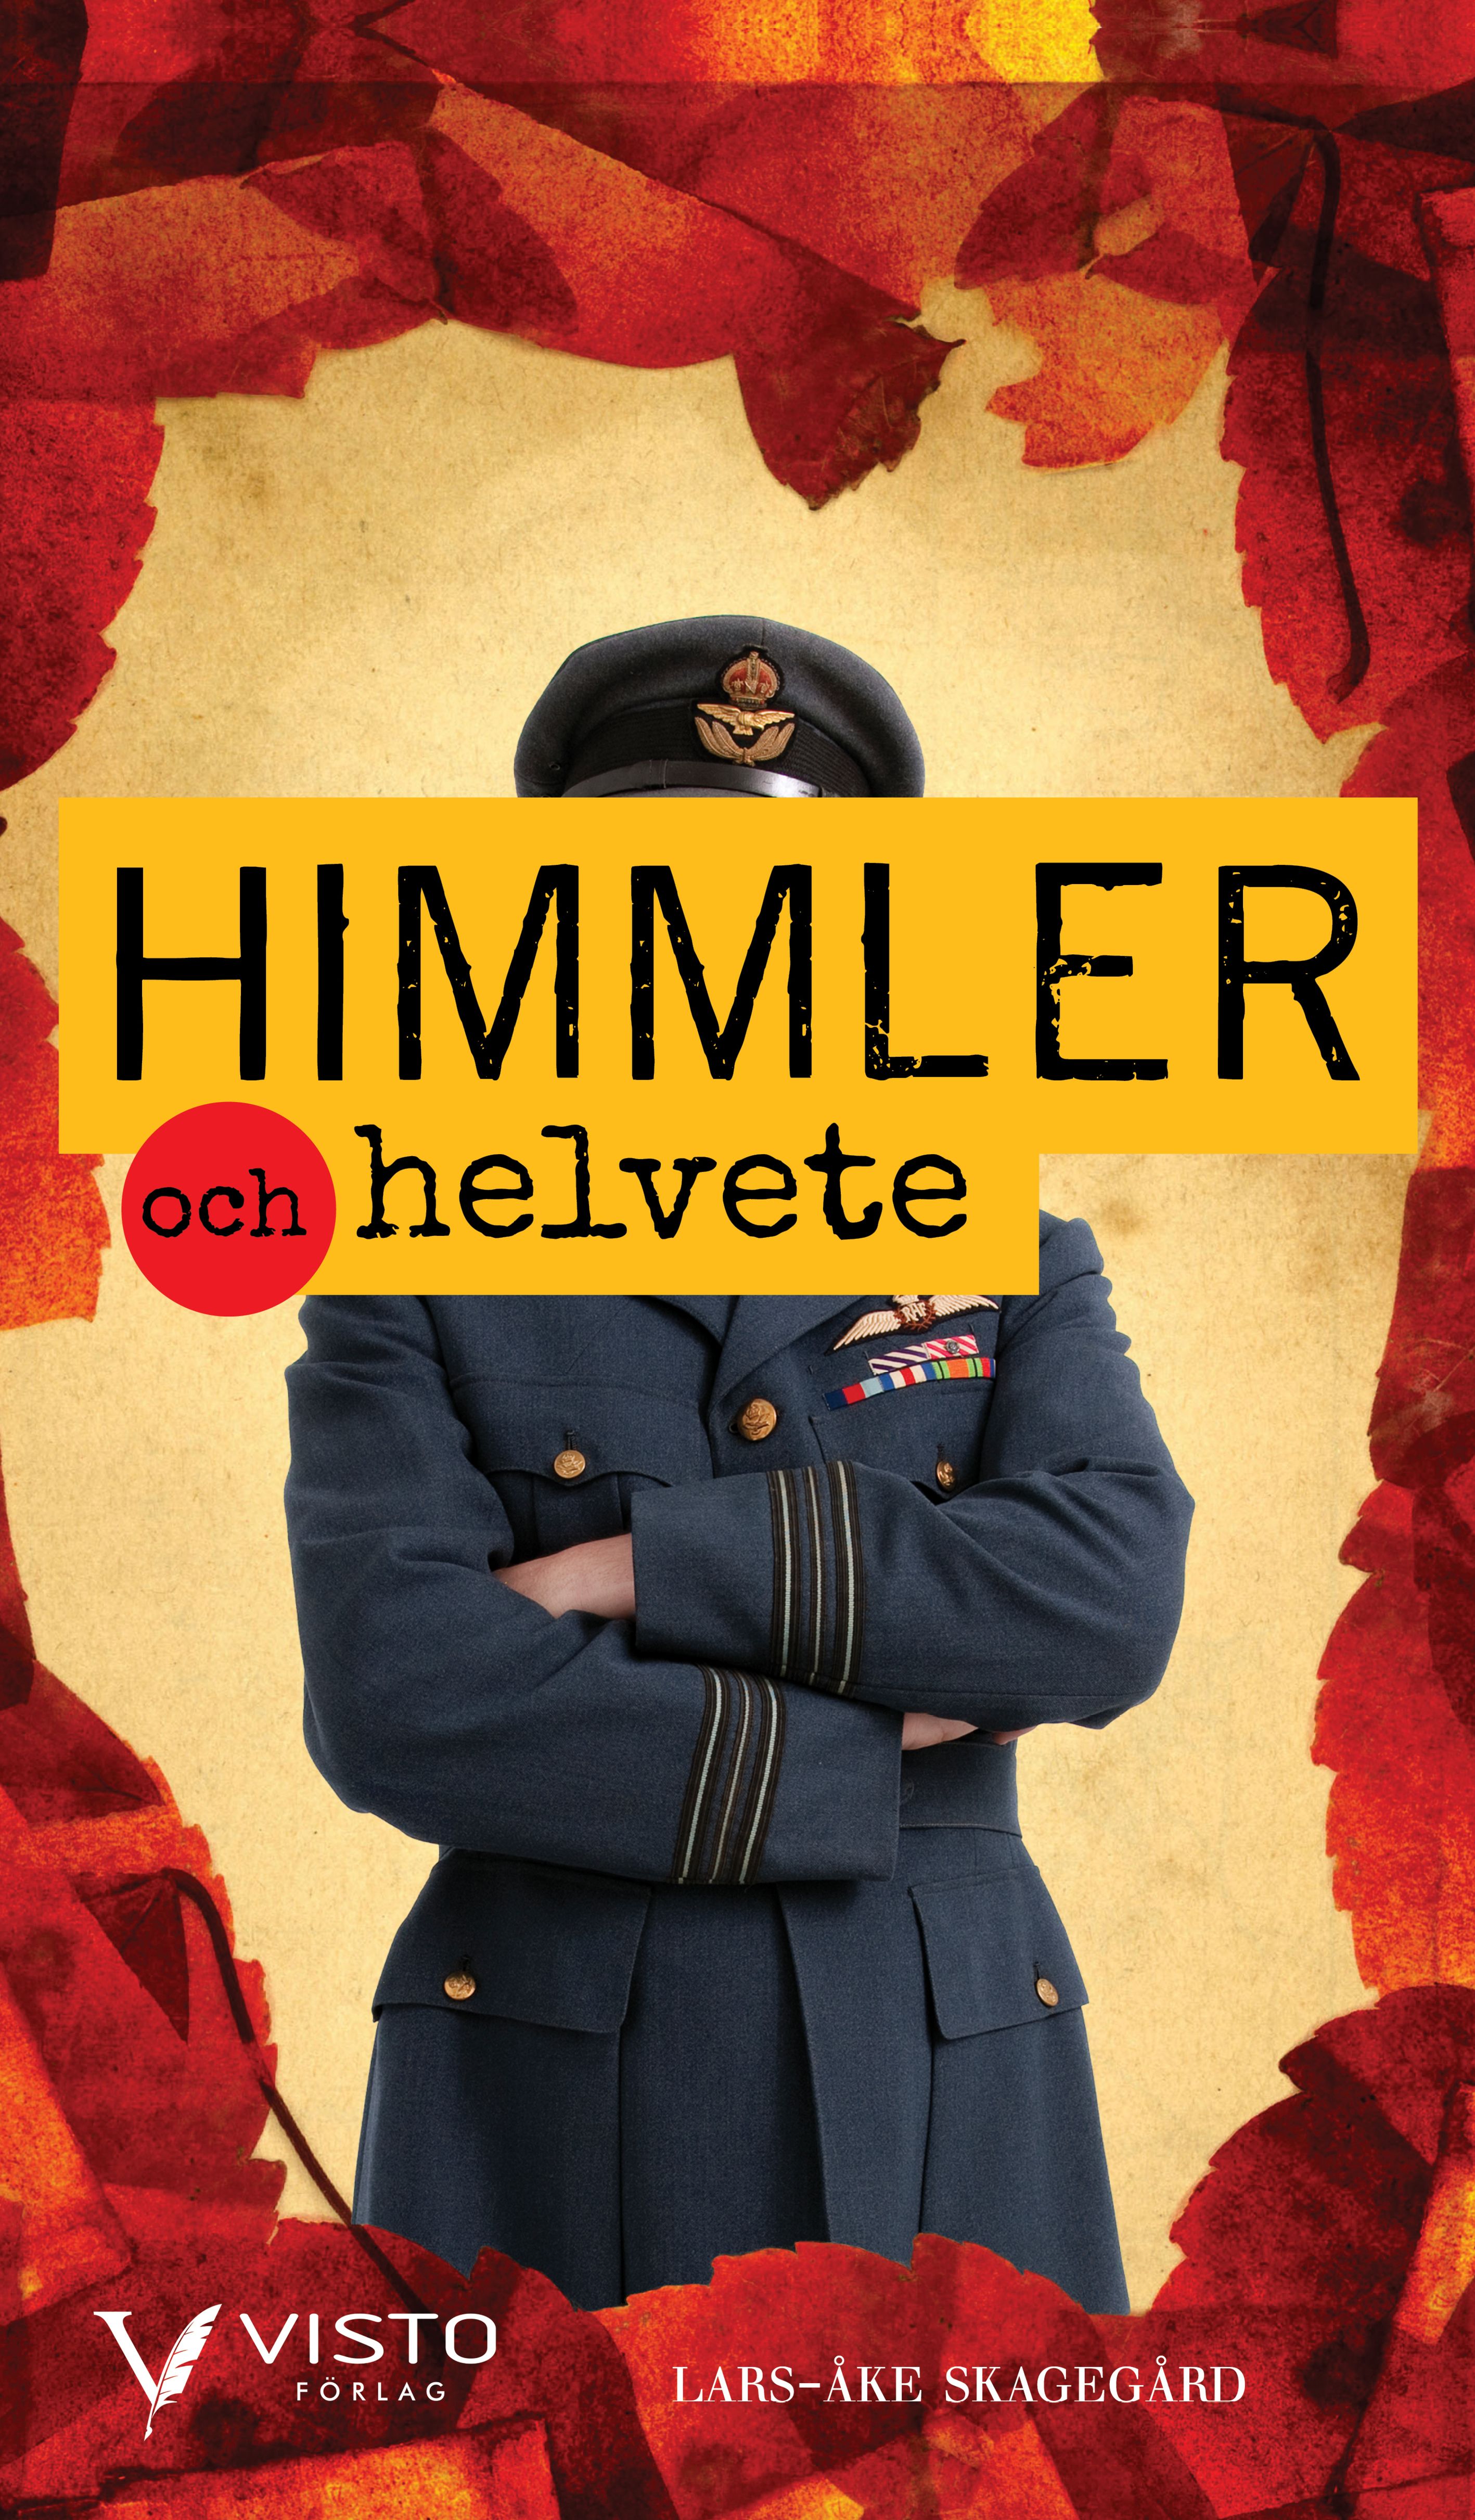 Himmler och helvete, e-bok av Lars-Åke Skagegård